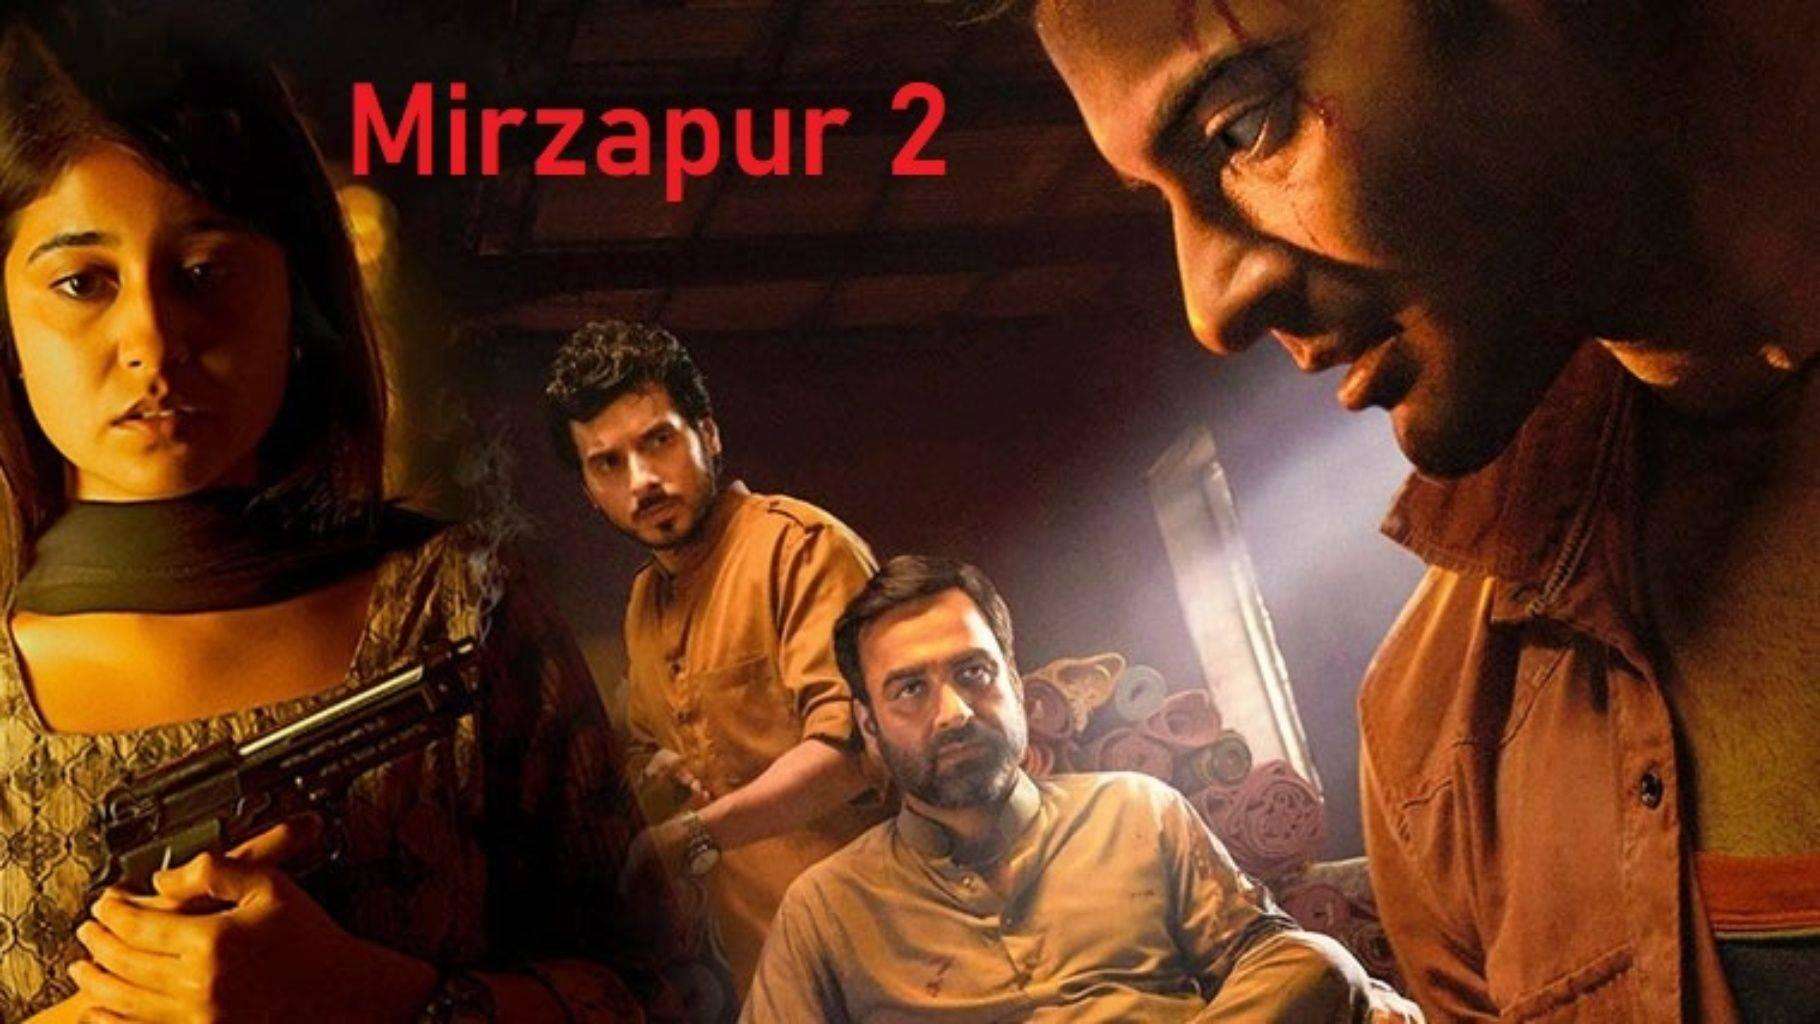 Mirzapur 2 review: मुन्ना त्रिपाठी या गुड्डू पंडित कौन करेगा कालीन भैया की गद्दी पर राज